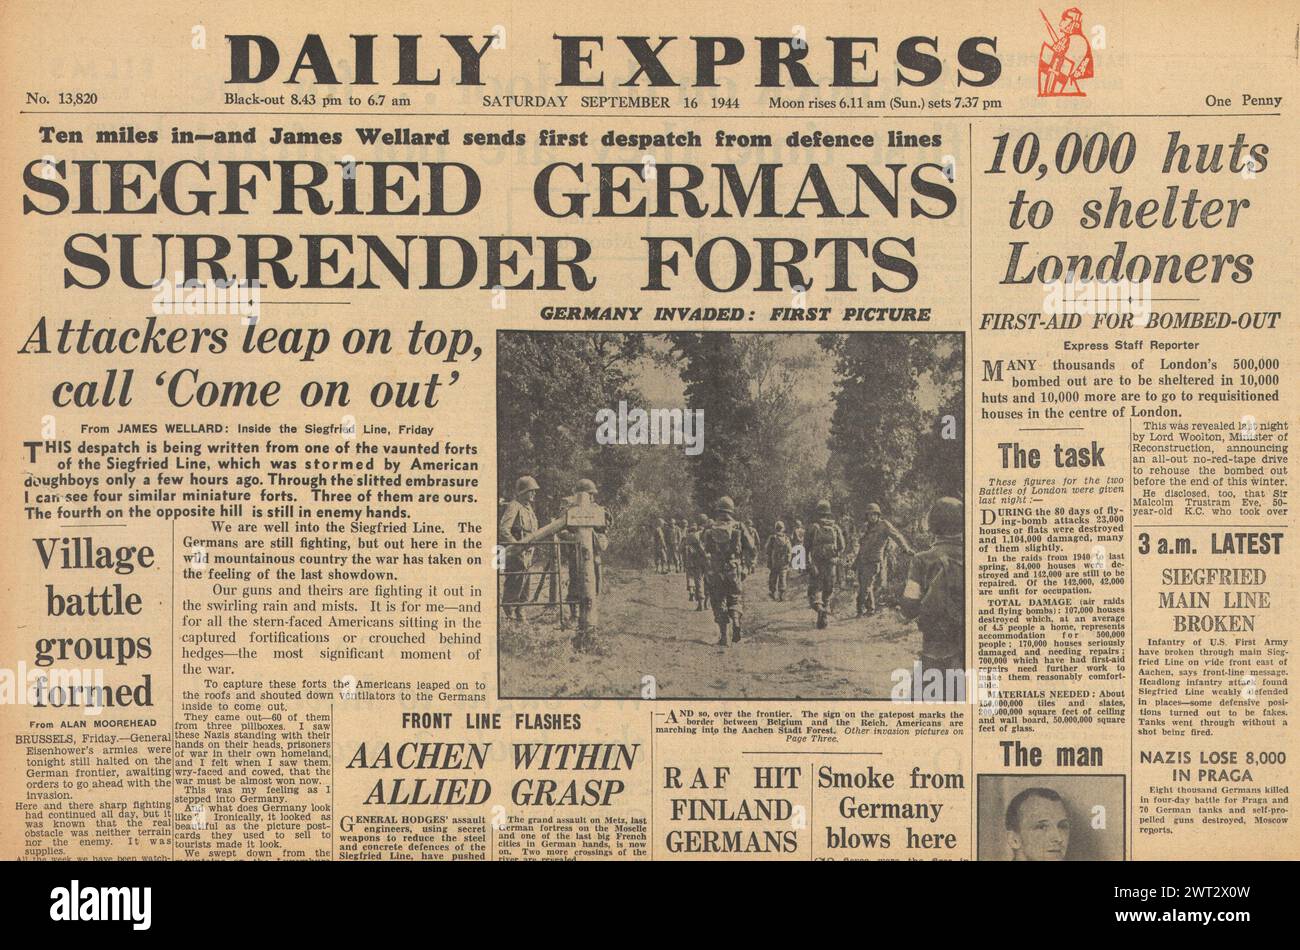 1944 Daily Express en première page sur la bataille des Alliés pour Aix-la-Chapelle, la brèche de la ligne Siegfried et le relogement bombardent les Londoniens Banque D'Images